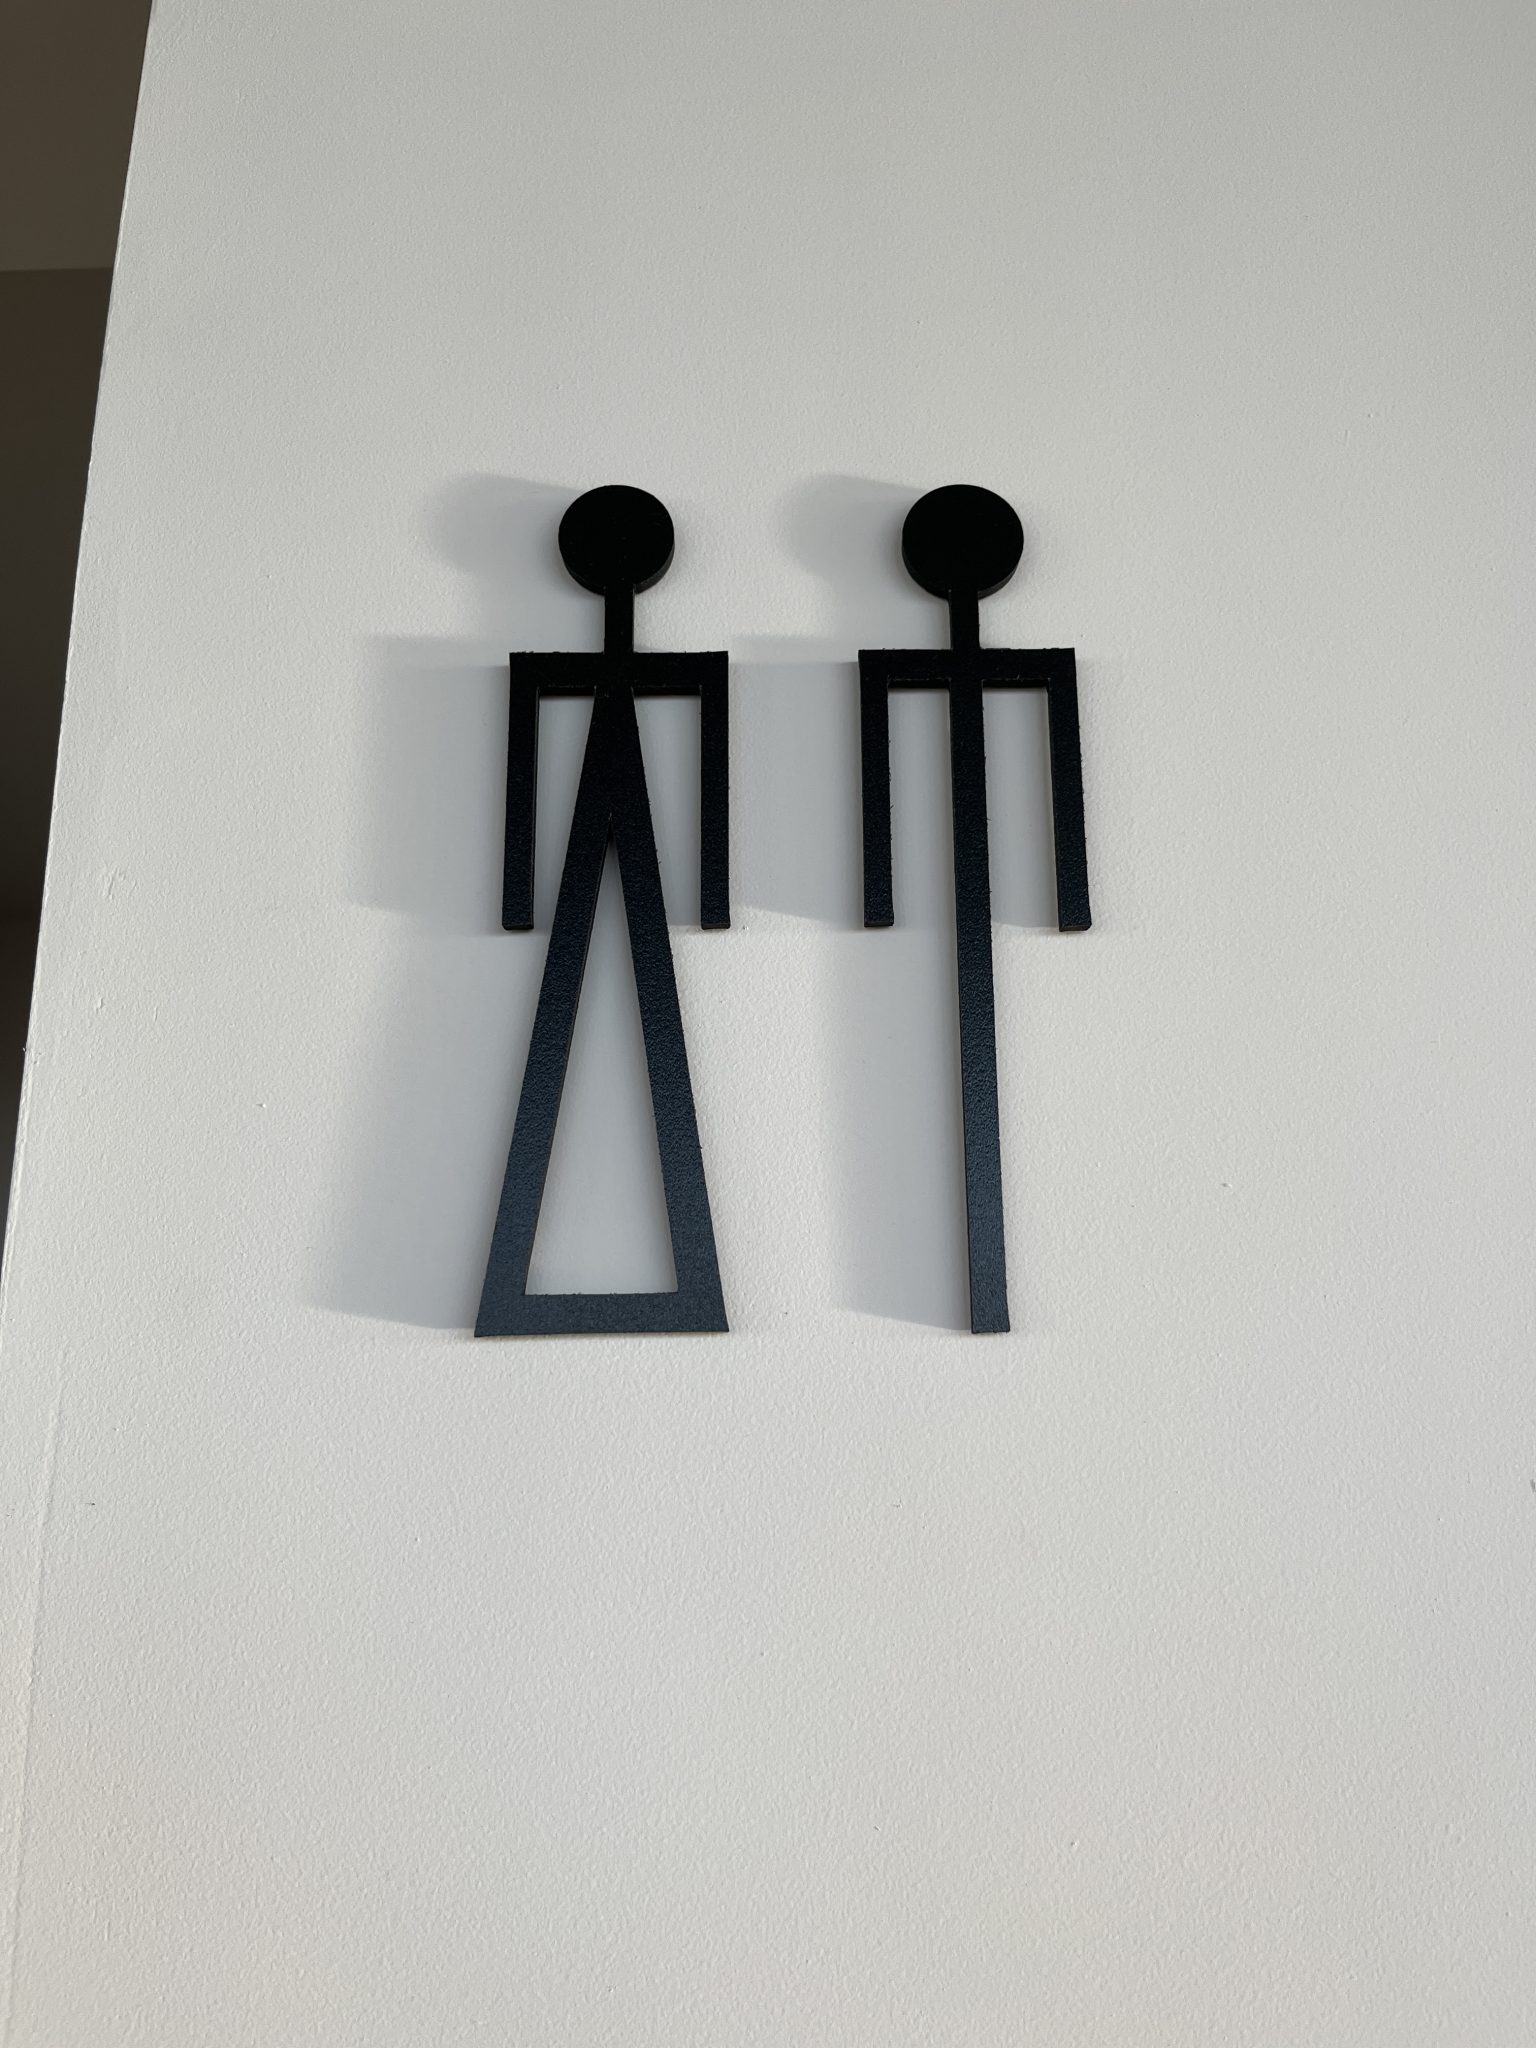 Sign outside a bathroom